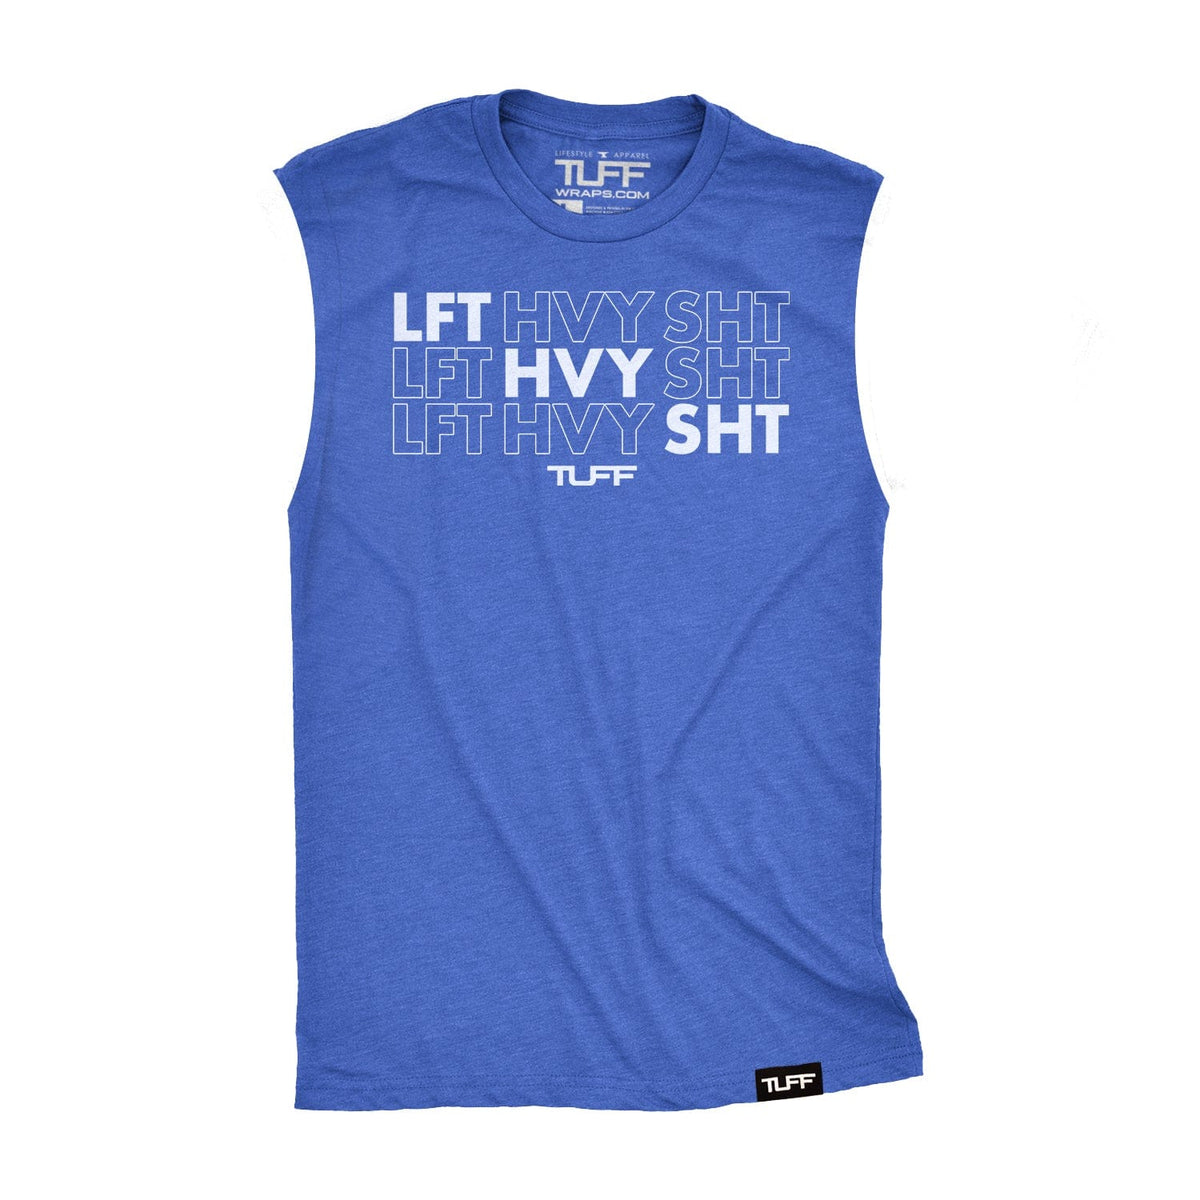 LFT HVY SHT Raw Edge Muscle Tank TuffWraps.com